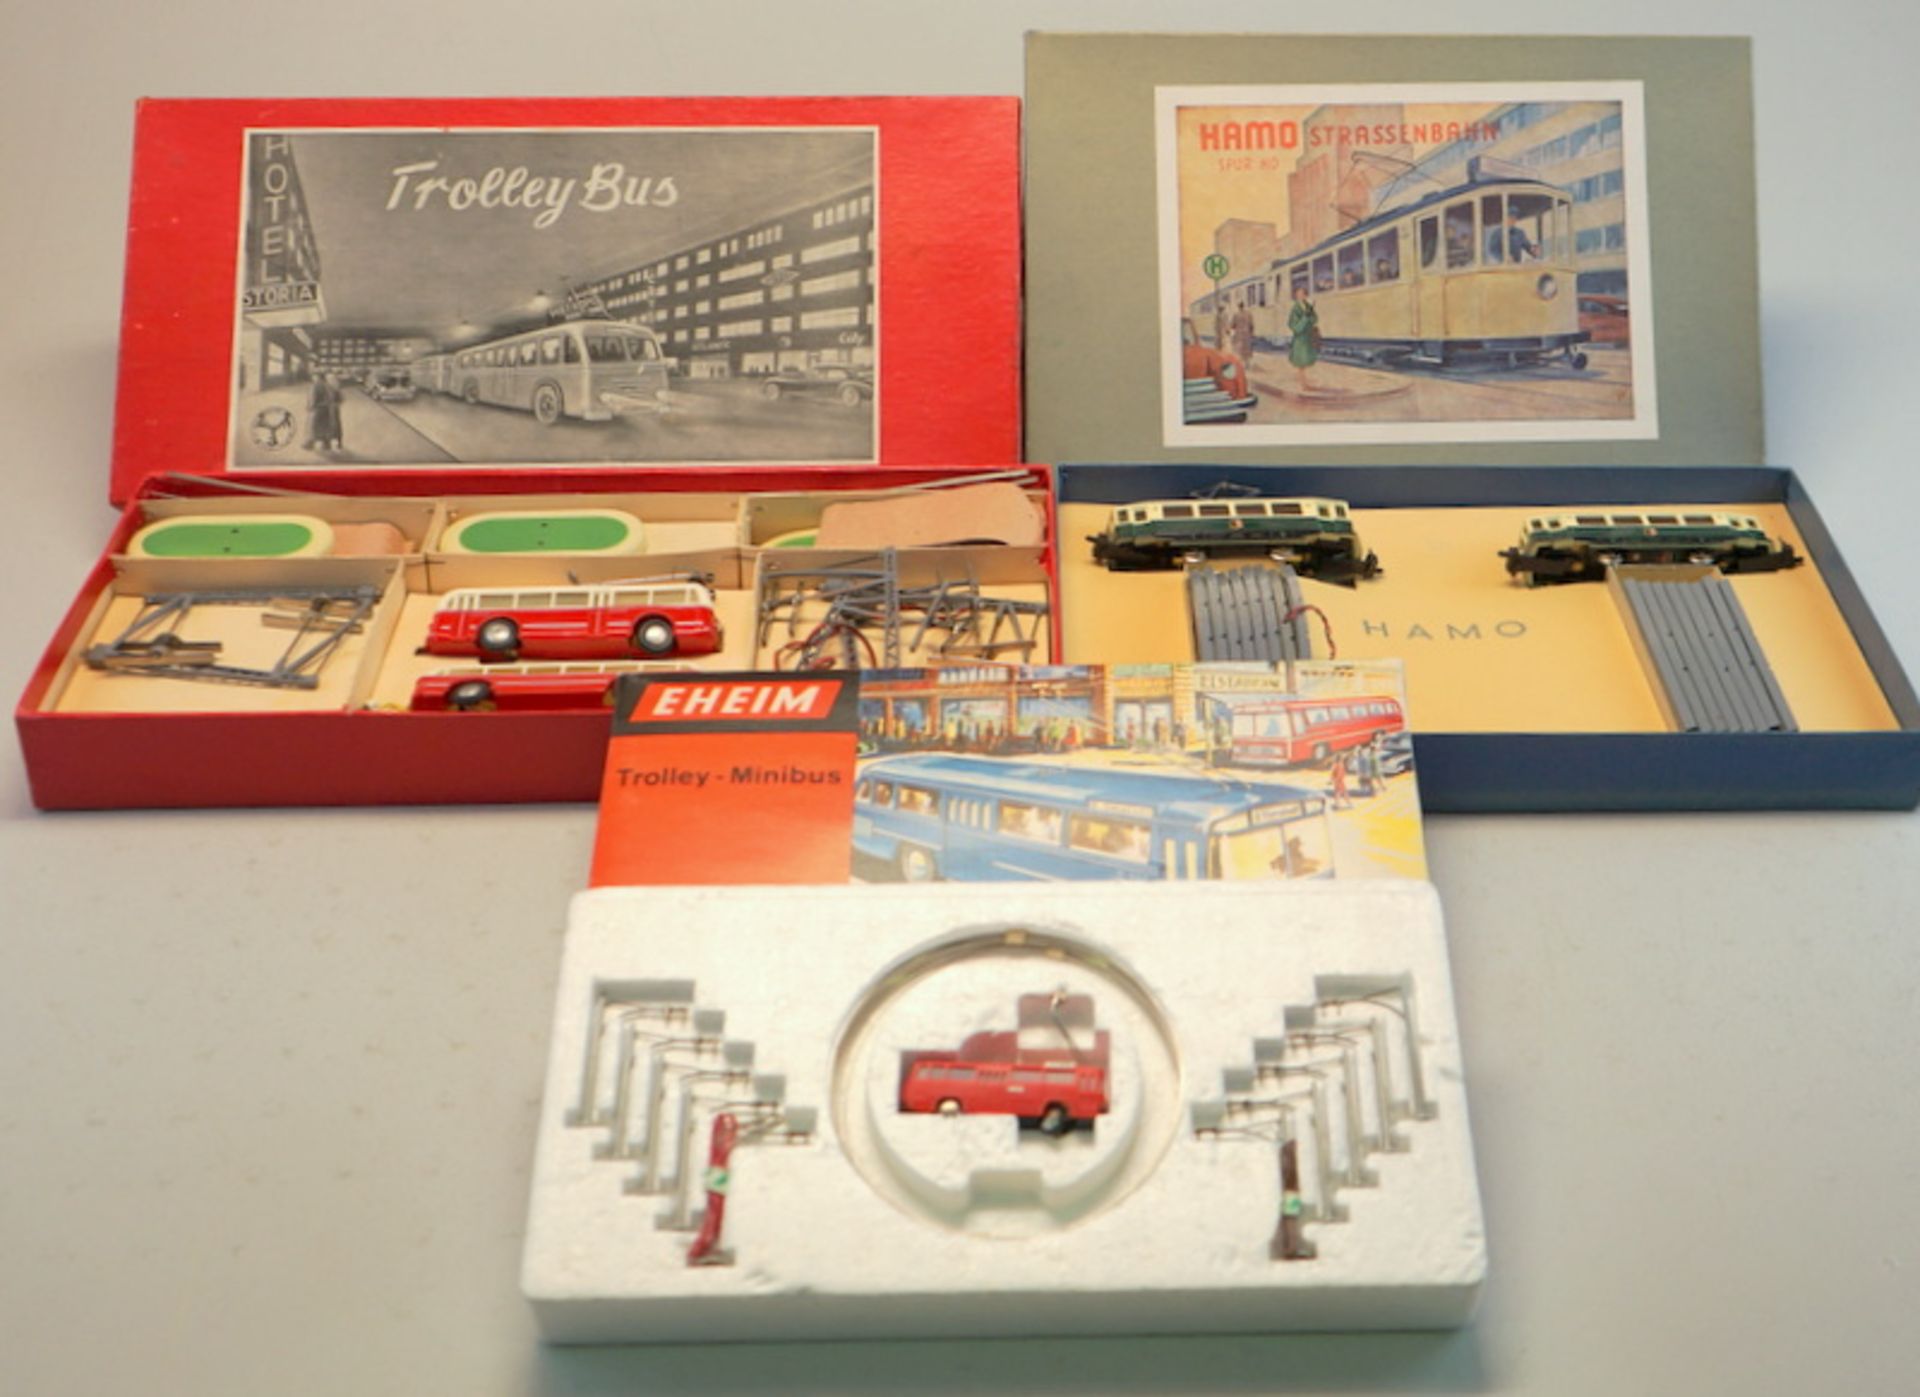 Sammlung von 3 Straßenbahnen/Trolley-Bus-Sets, Eheim u. Hamo